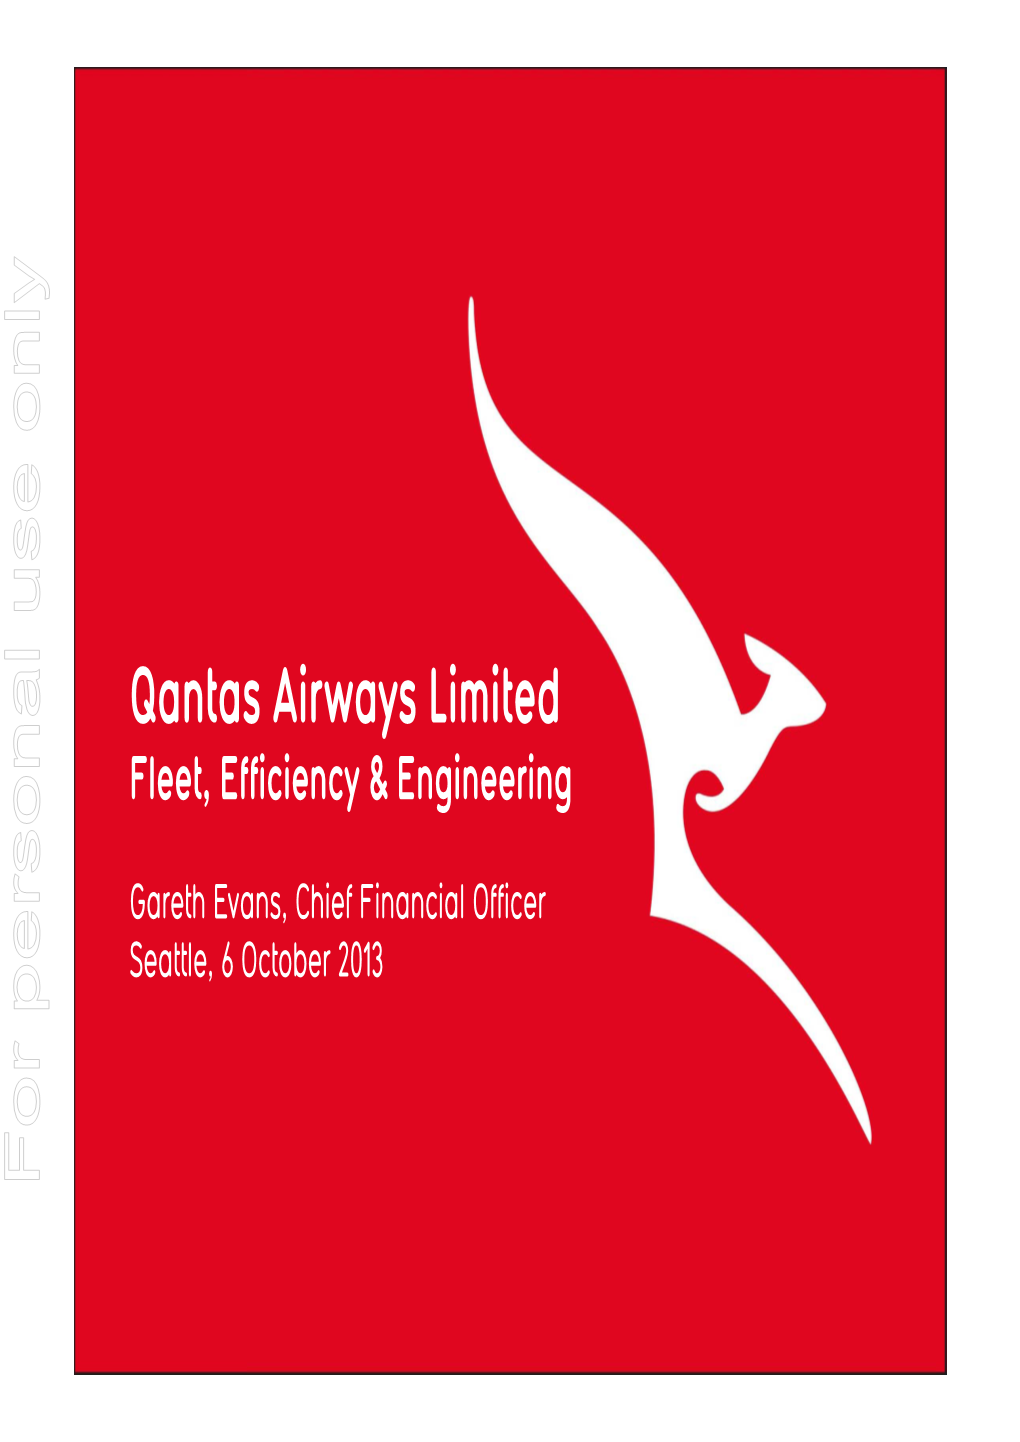 Qantas Airways Limited Fleet, Efficiency & Engineering